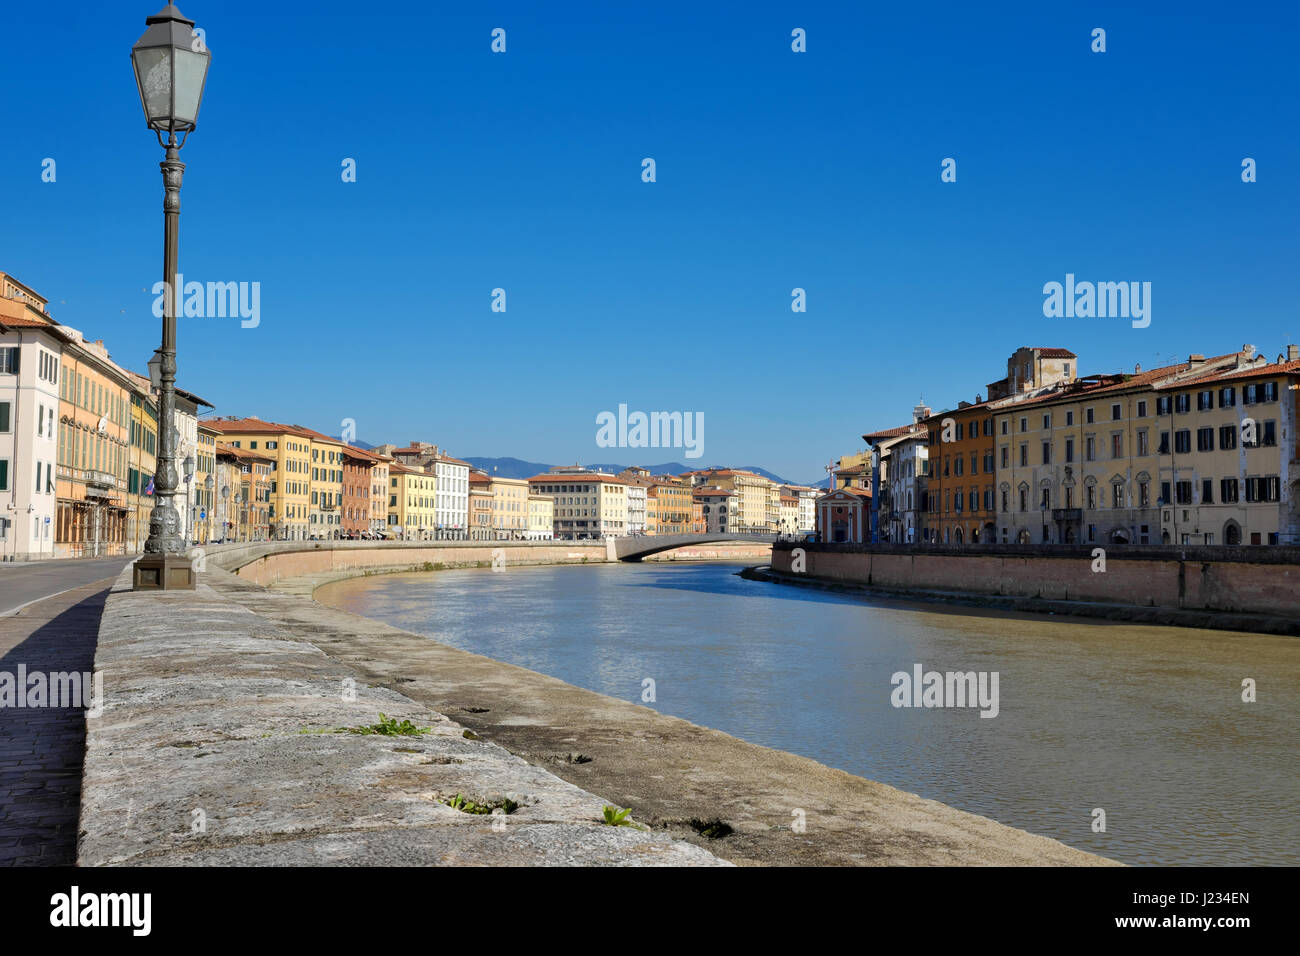 Paesaggio urbano (cityscape) dal fiume Arno - ad angolo vista del Ponte di Mezzo ponte, Pisa, Toscana, Italia, Europa - Città lampione in primo piano Foto Stock